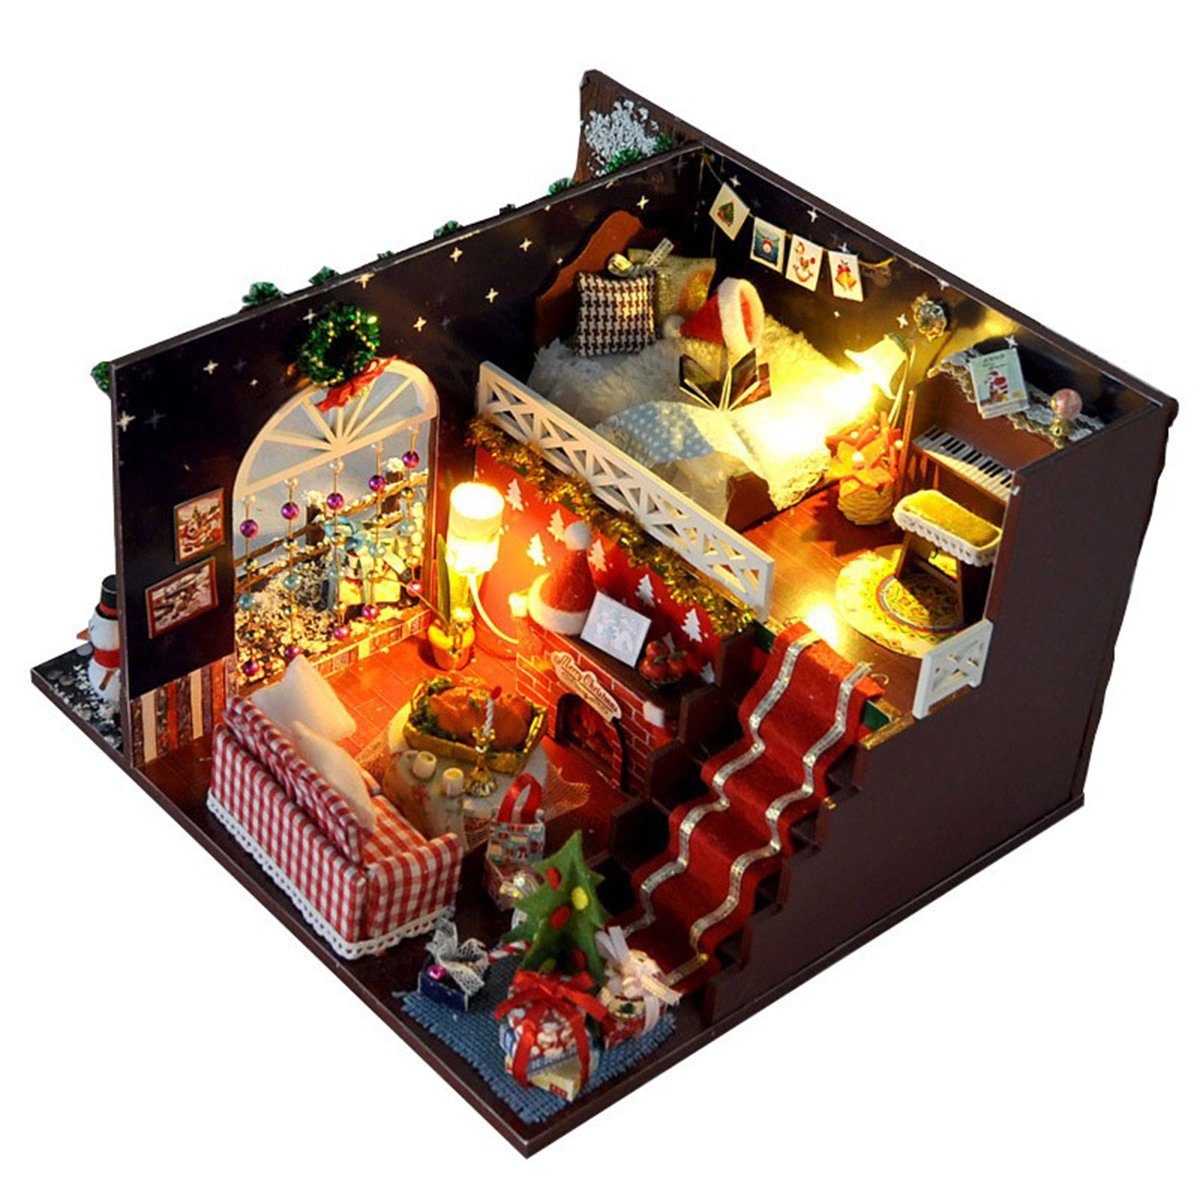 autolock Weihnachtshaus Miniatur Weihnachtshaus 3D Puppenhaus DIY Kit Weihnachtsgeschenke Handmade Handwerk, Puppenhaus Modell